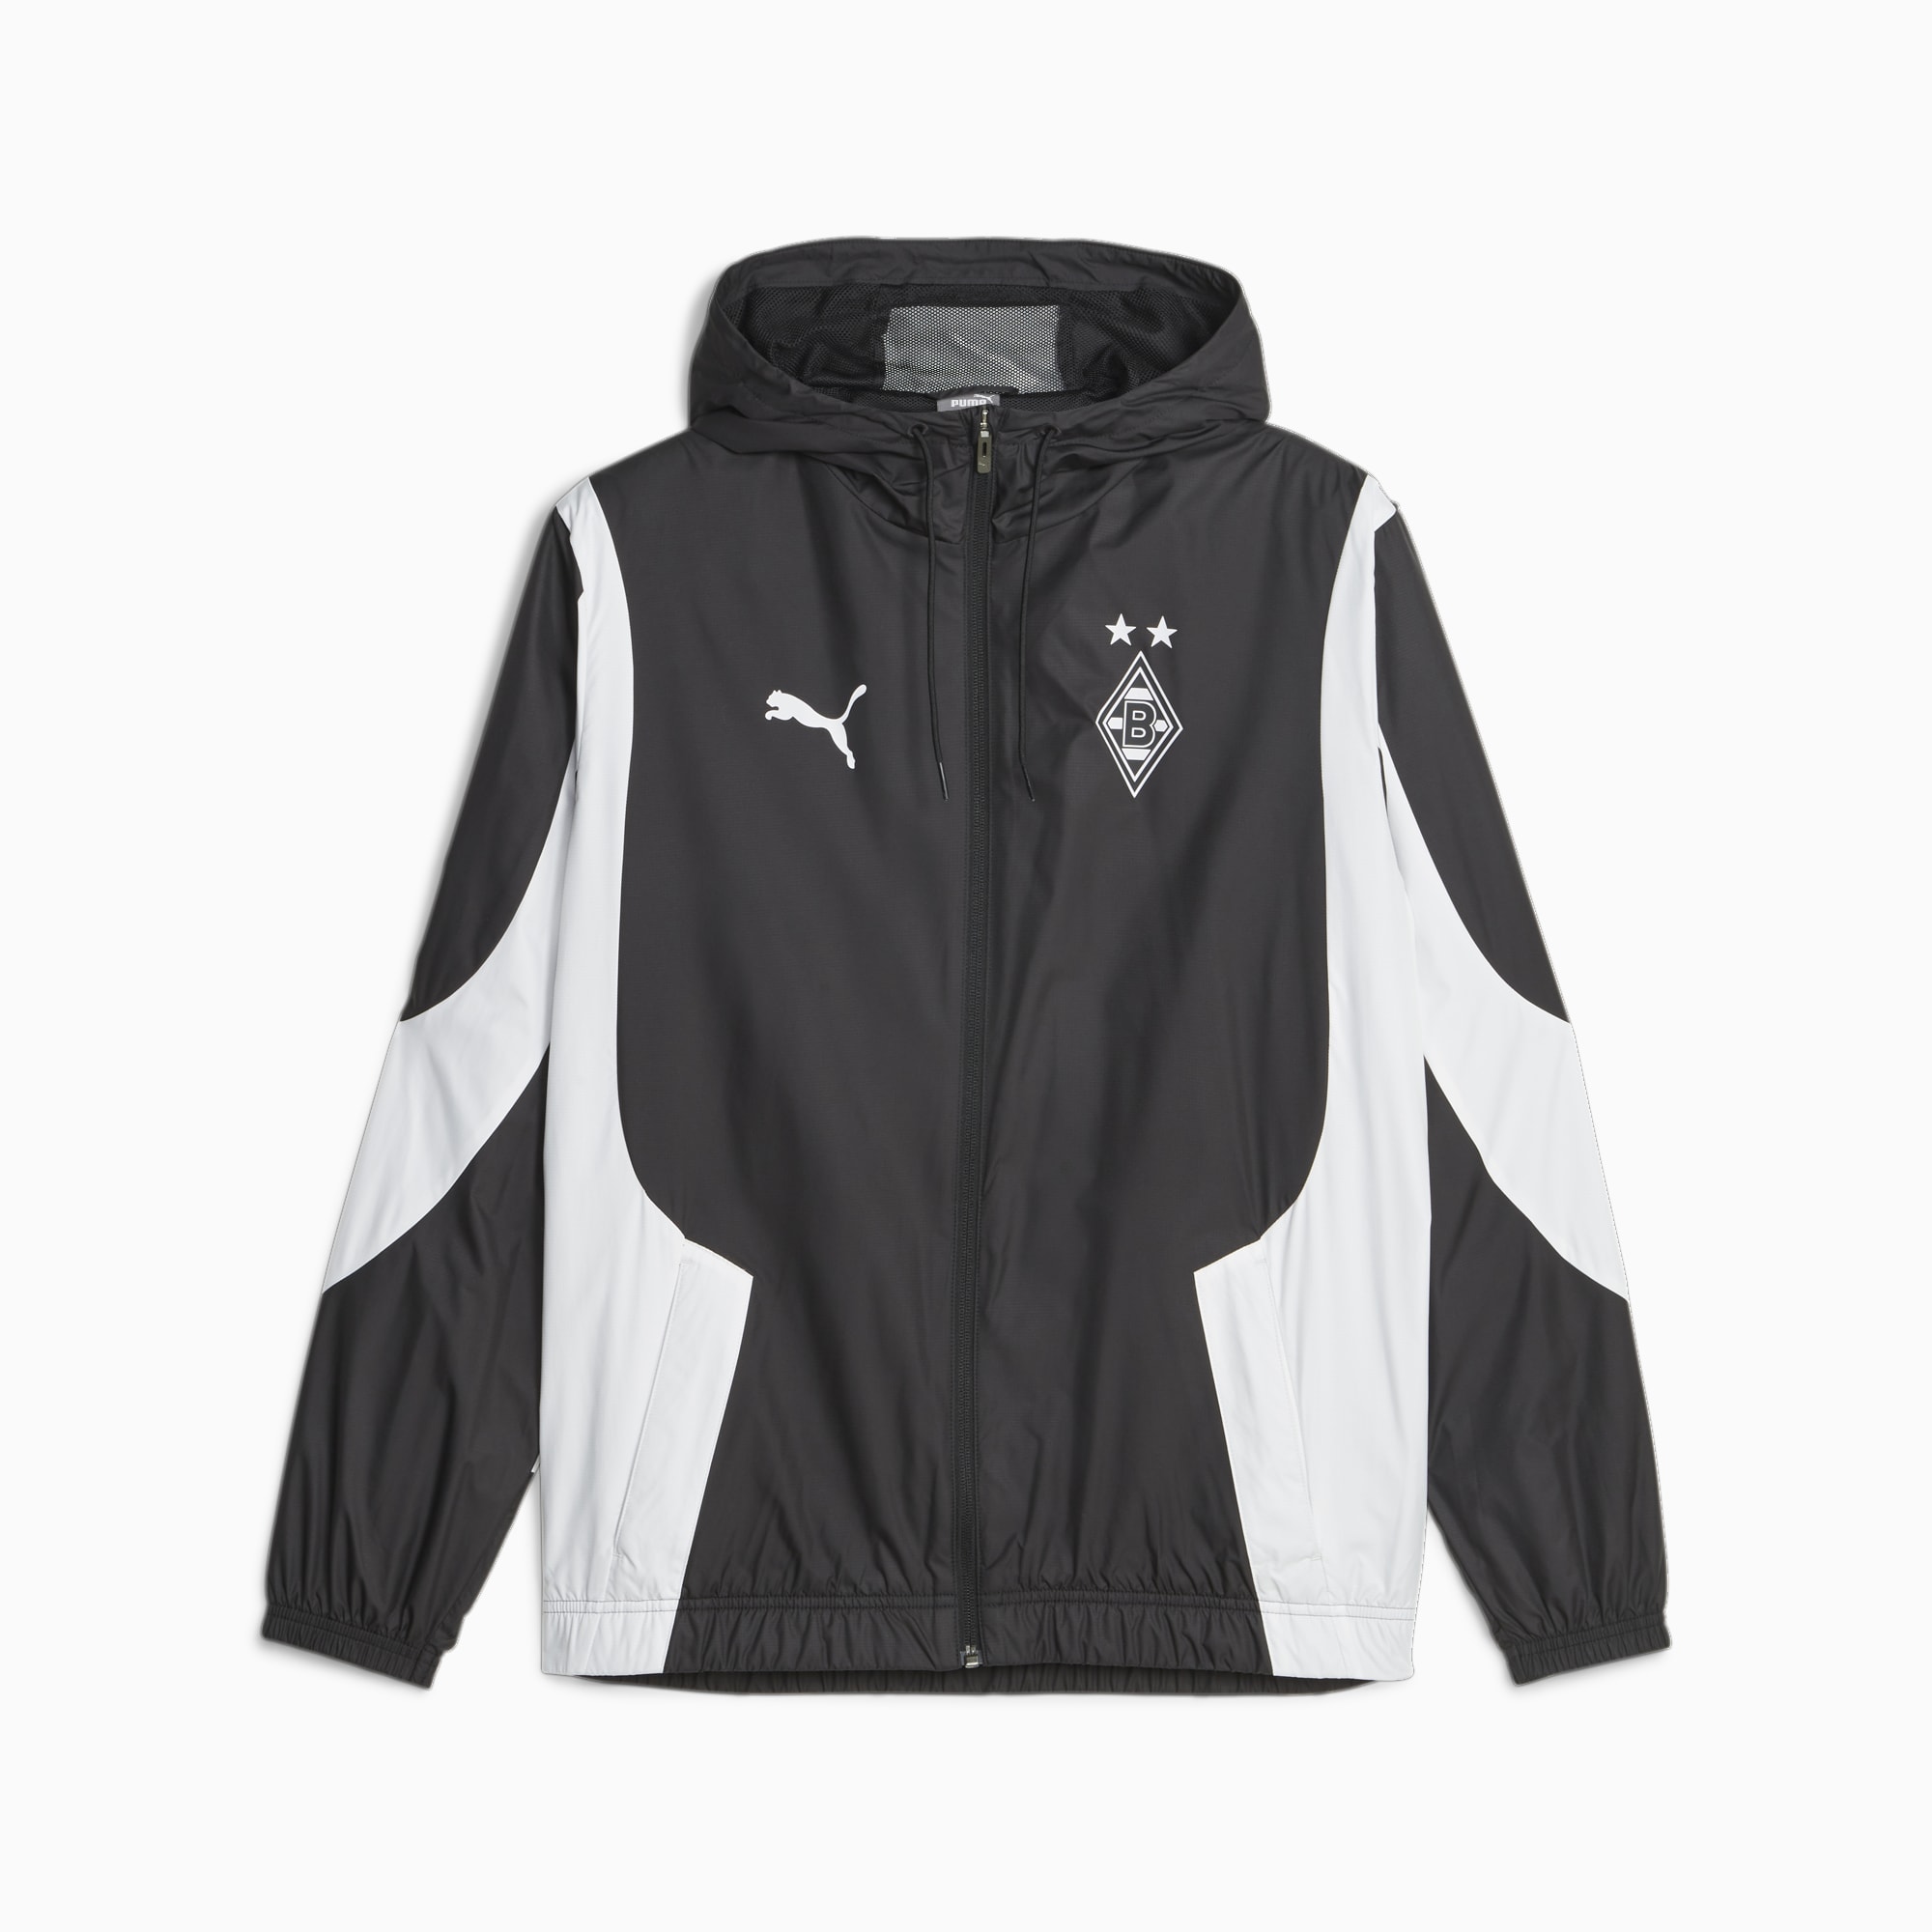 Borussia Monchengladbach Football Jacket同モデルではございませんがt